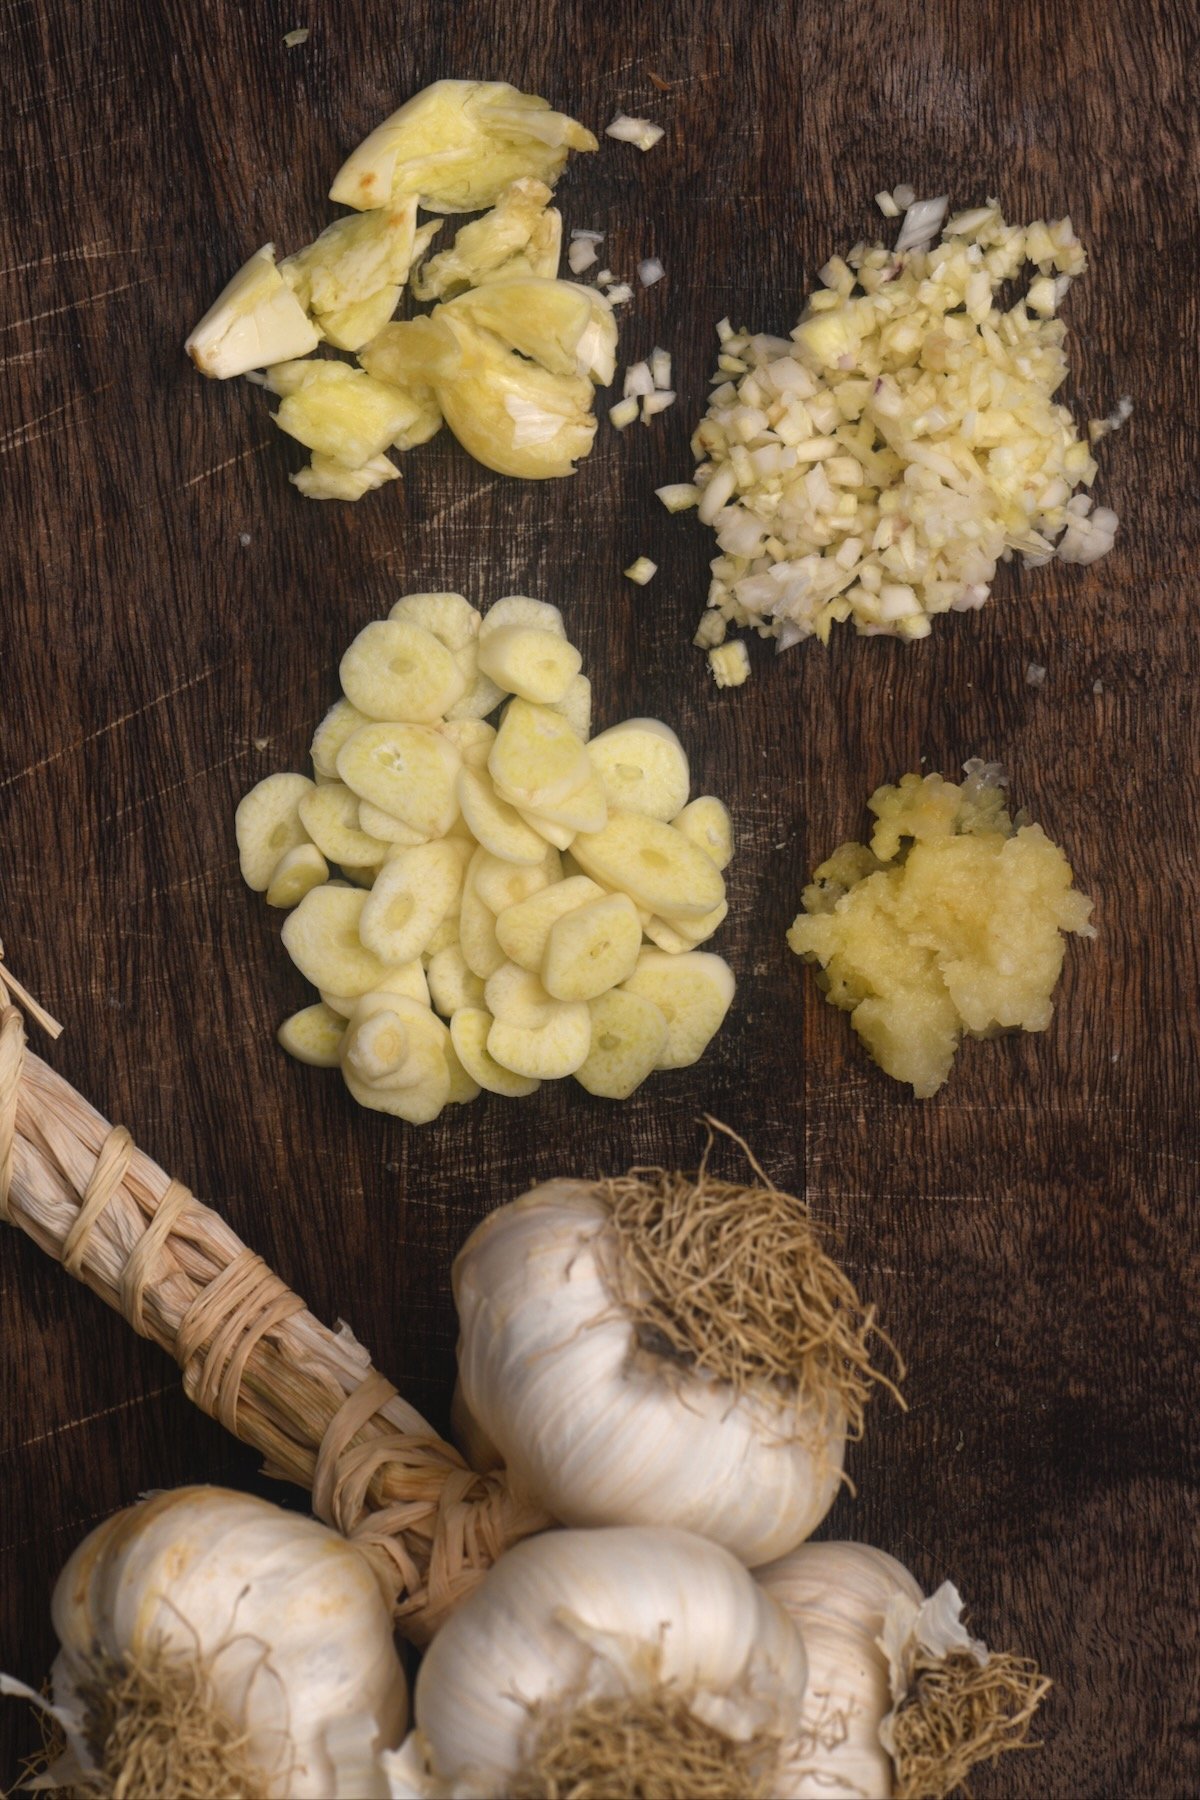 Garlic cut in different ways